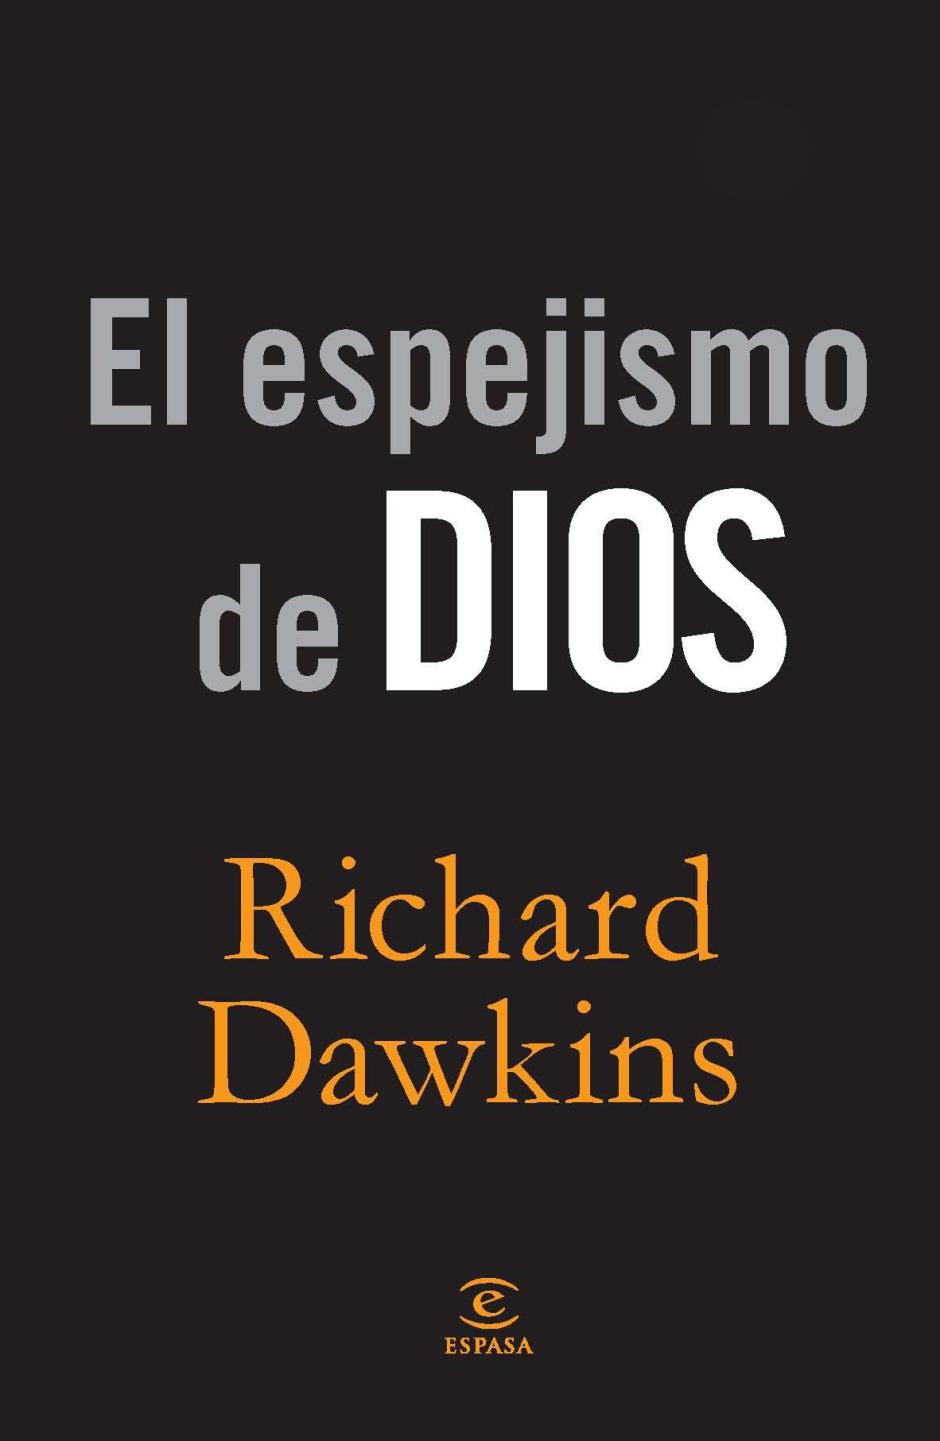 'El espejismo de Dios' es uno de los libros más conocidos de Richard Dawkins